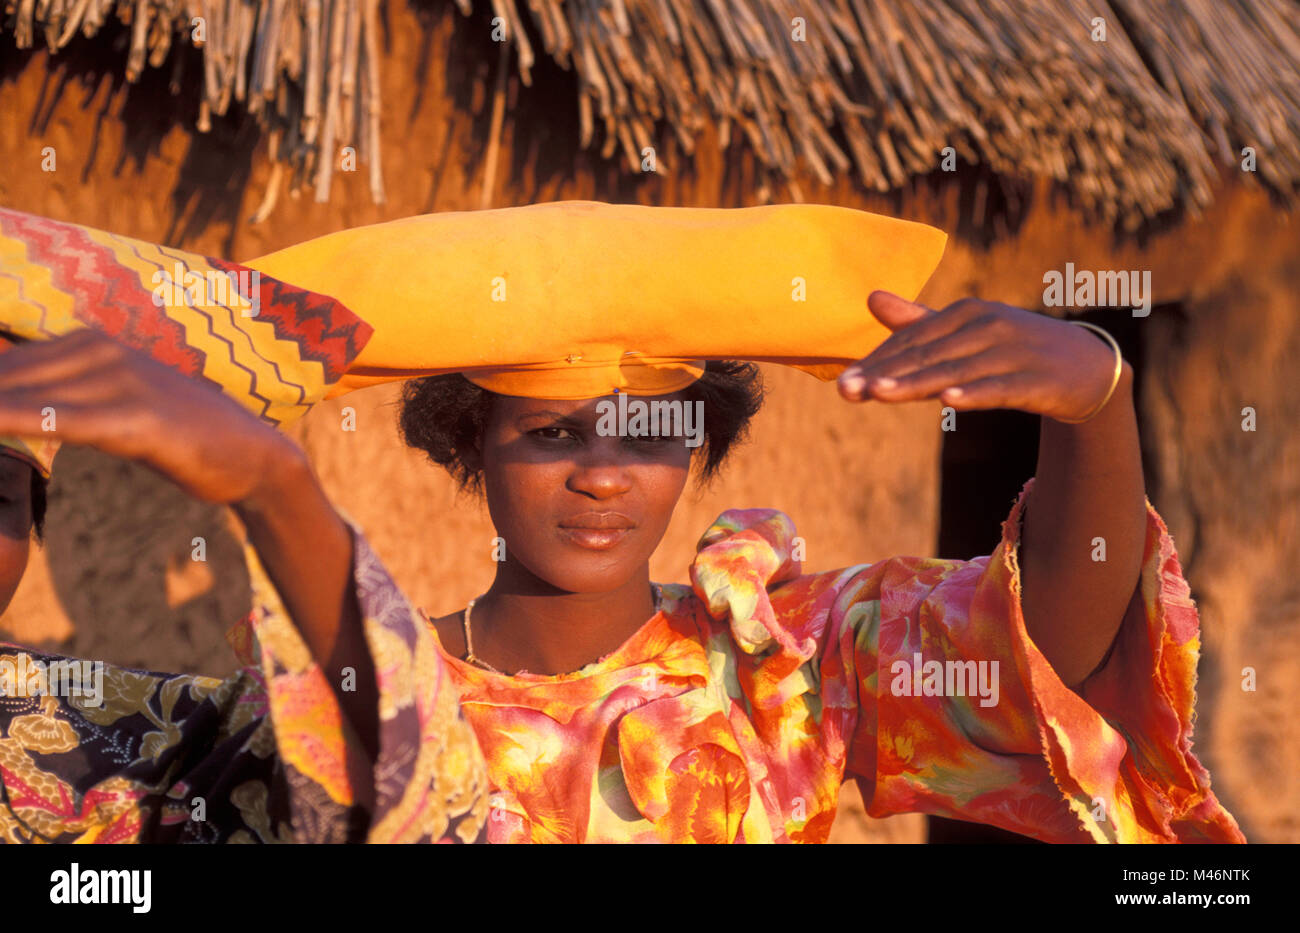 La Namibie. Kaokoveld, près d'Opuwo. Les femmes Herero. Vicotorian typique robe et chapeau. Banque D'Images